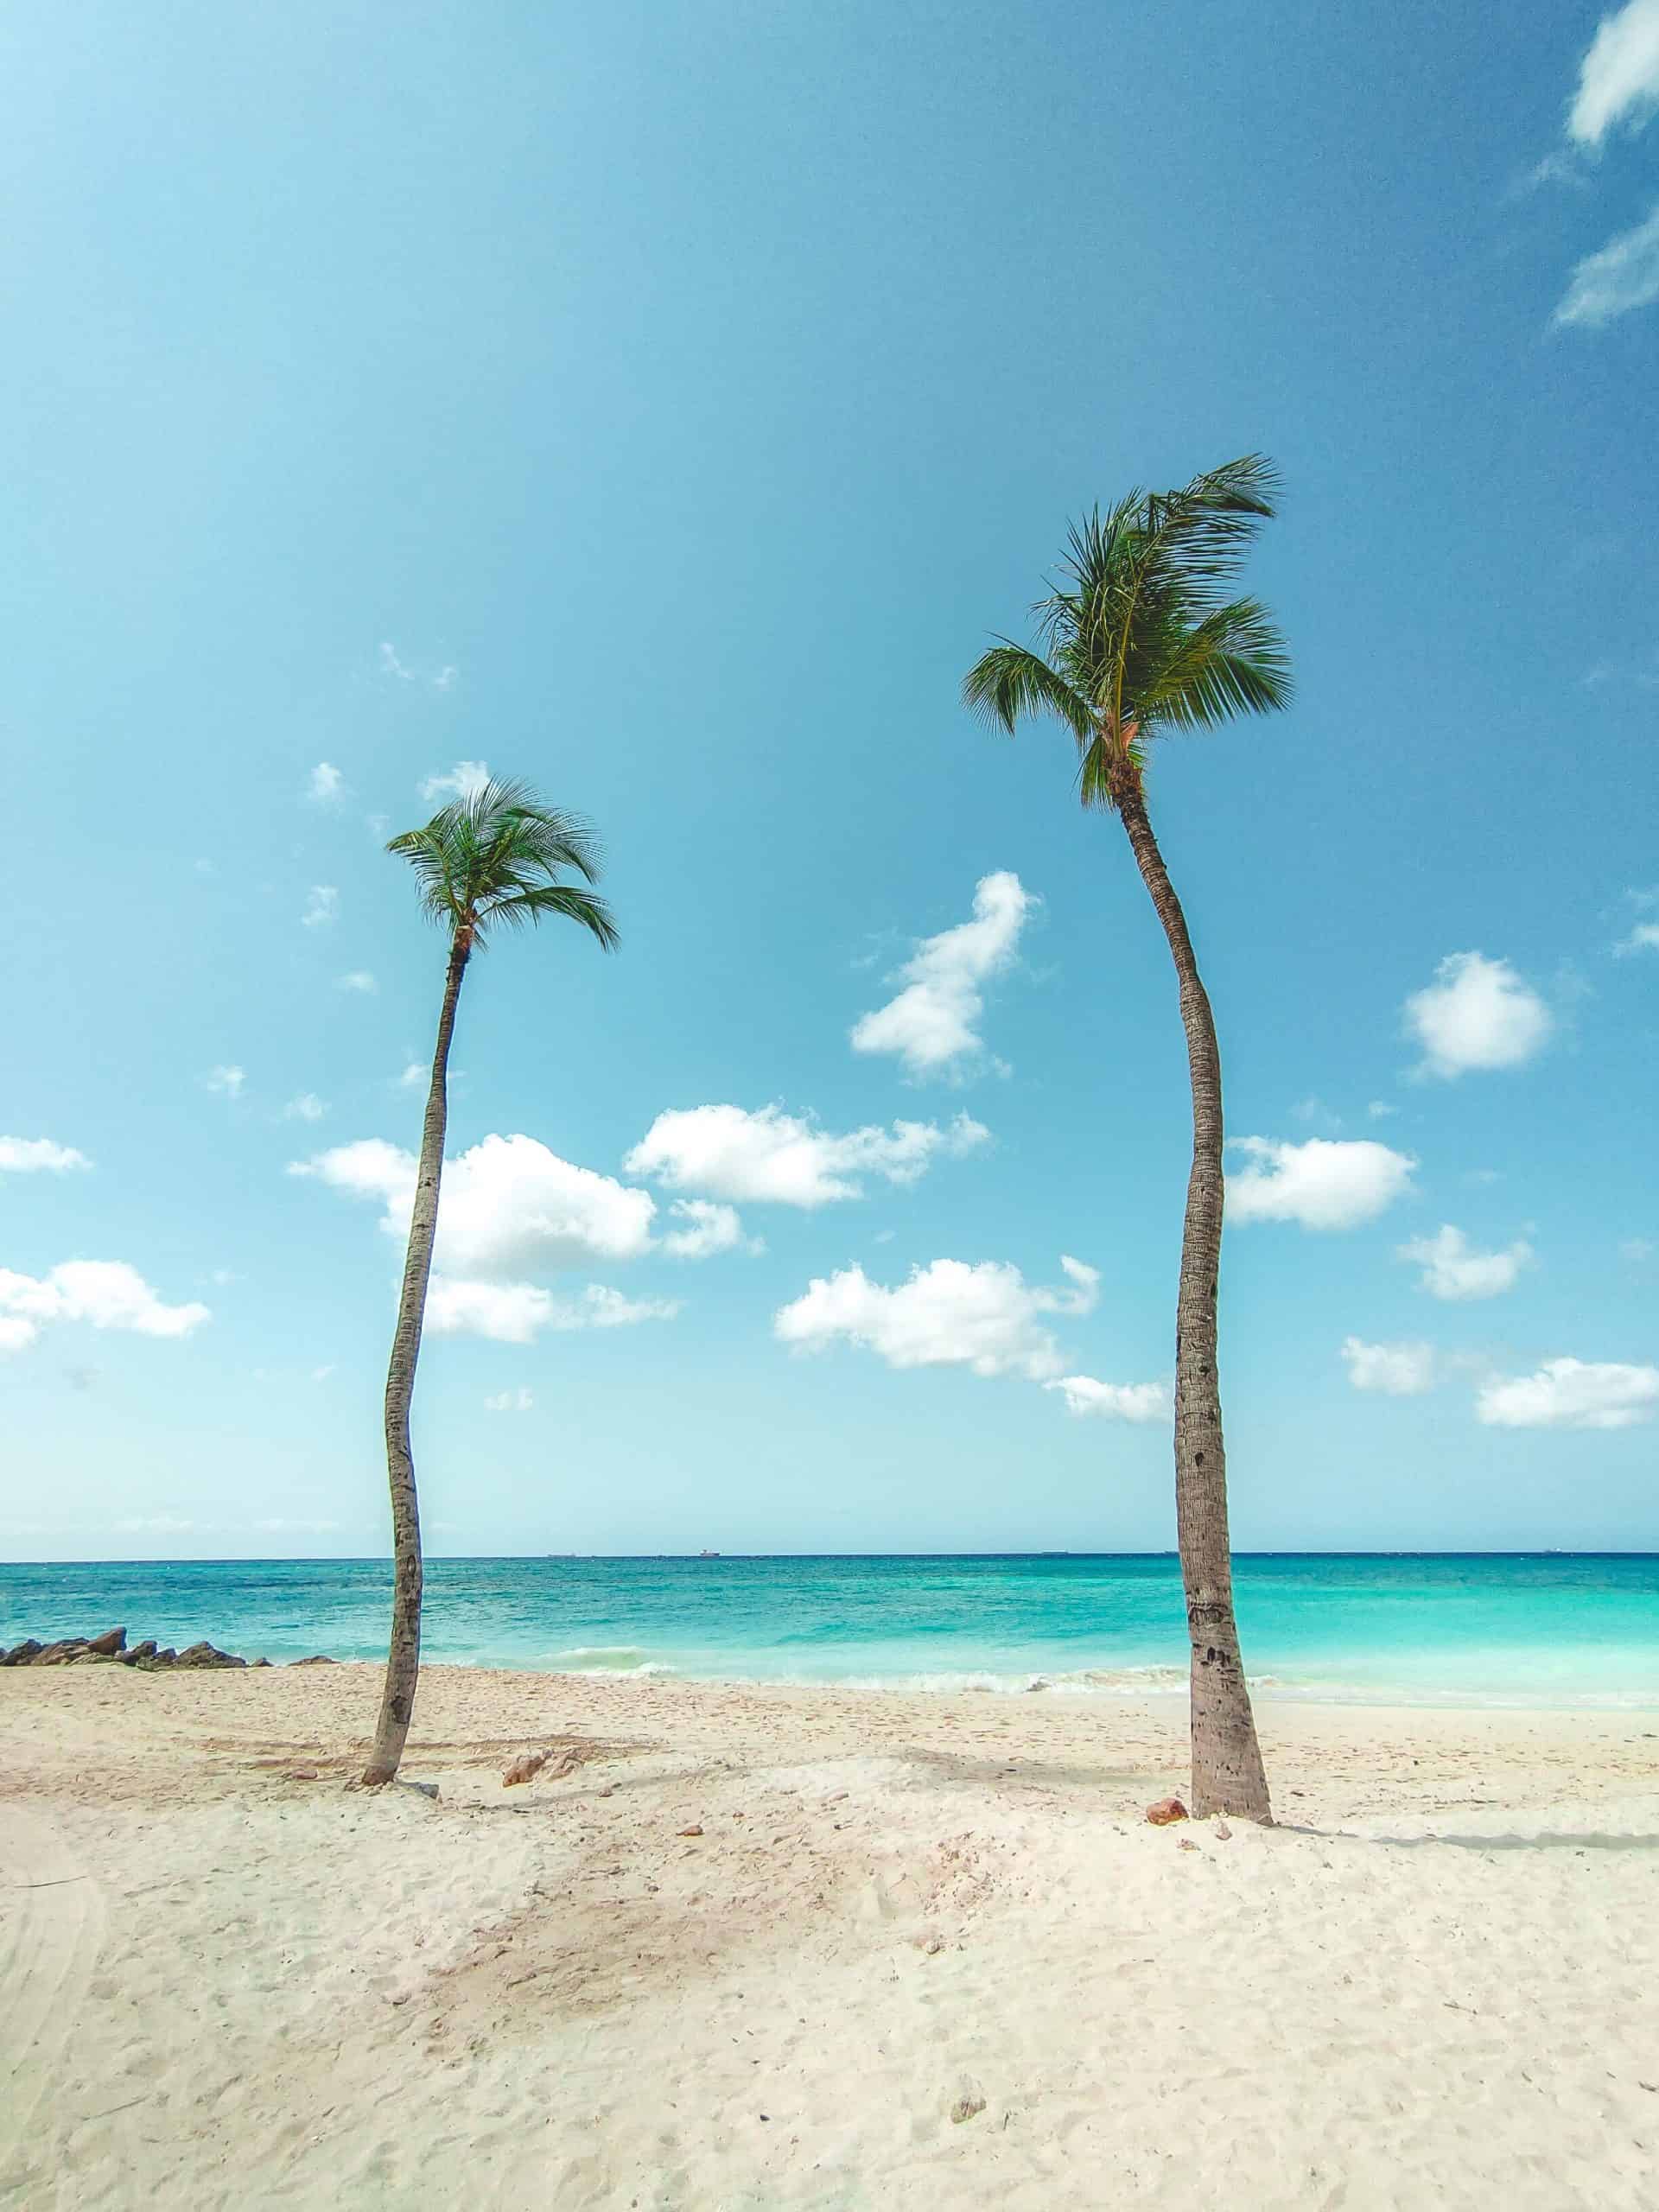 Aruba vs Cancun - Which is the Better Beach Trip?